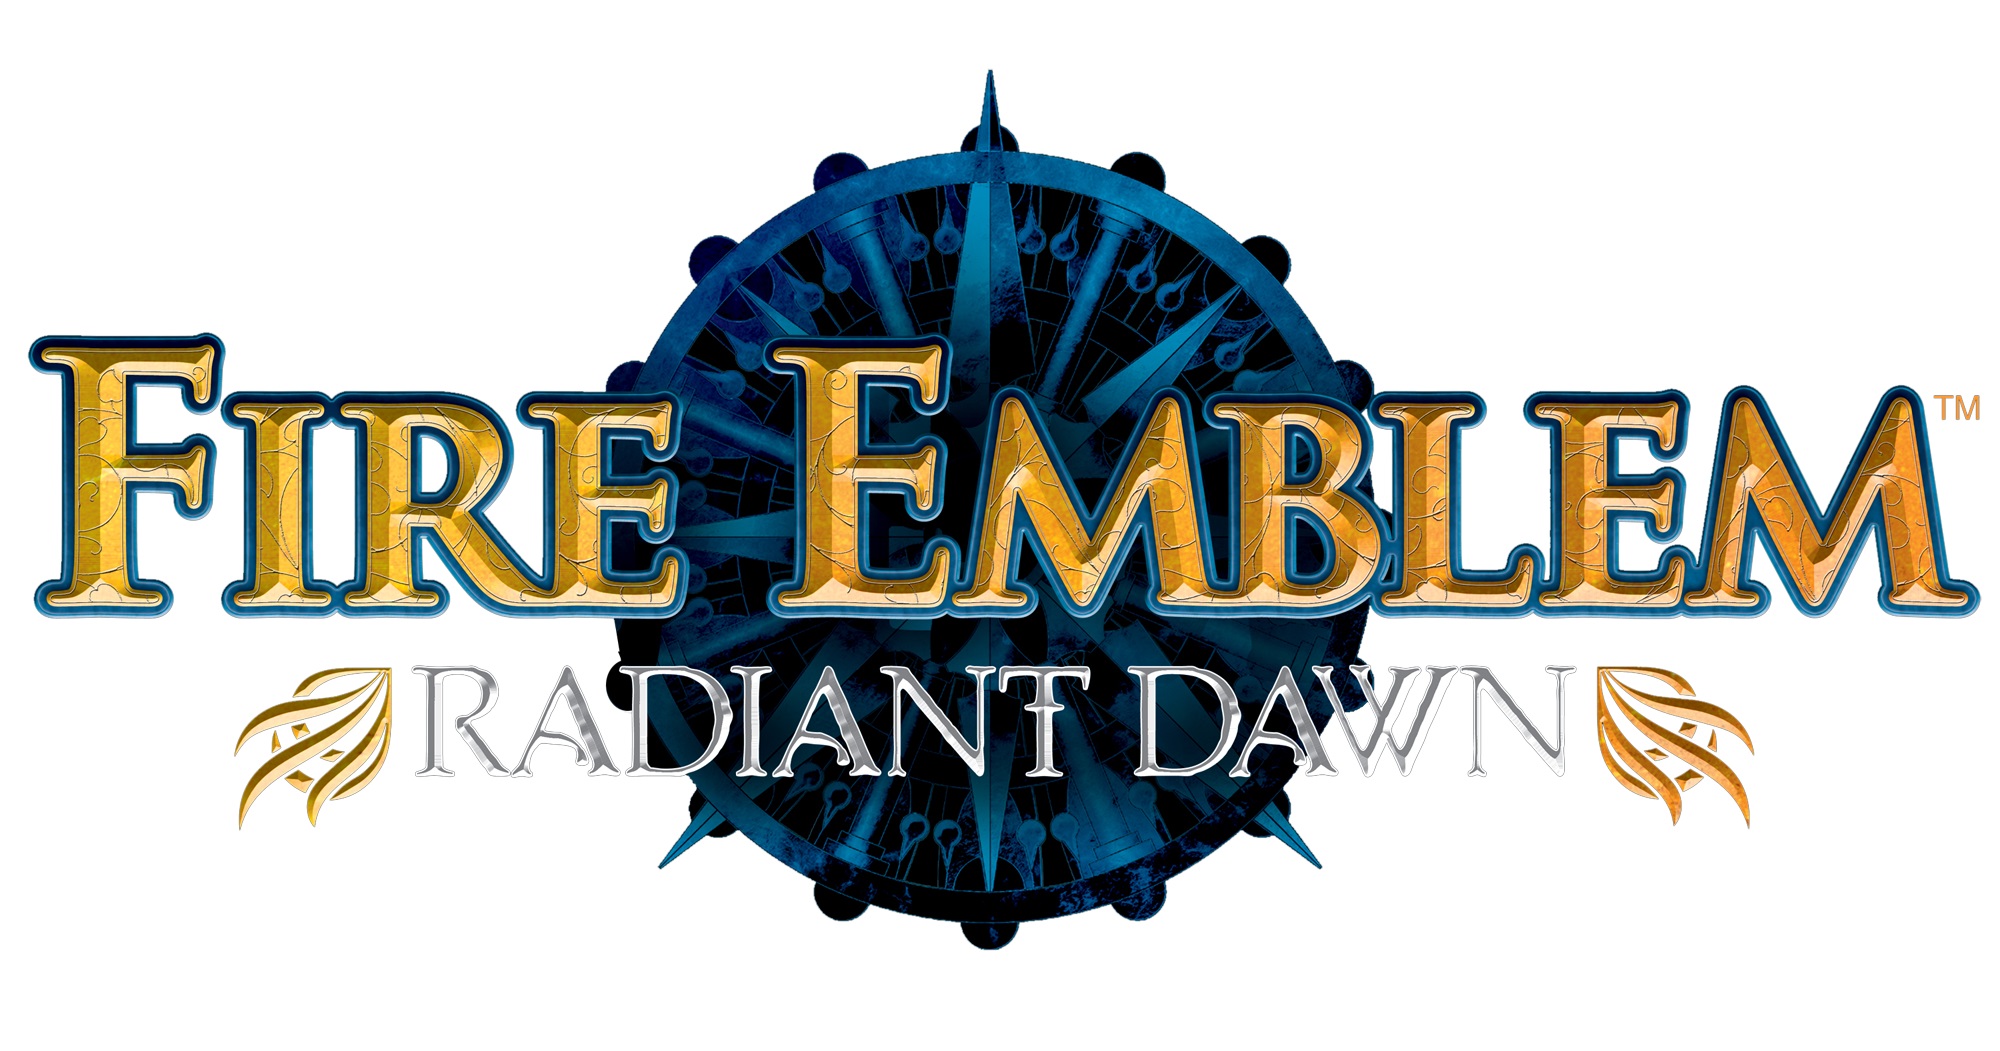 fire emblem radiant dawn skills